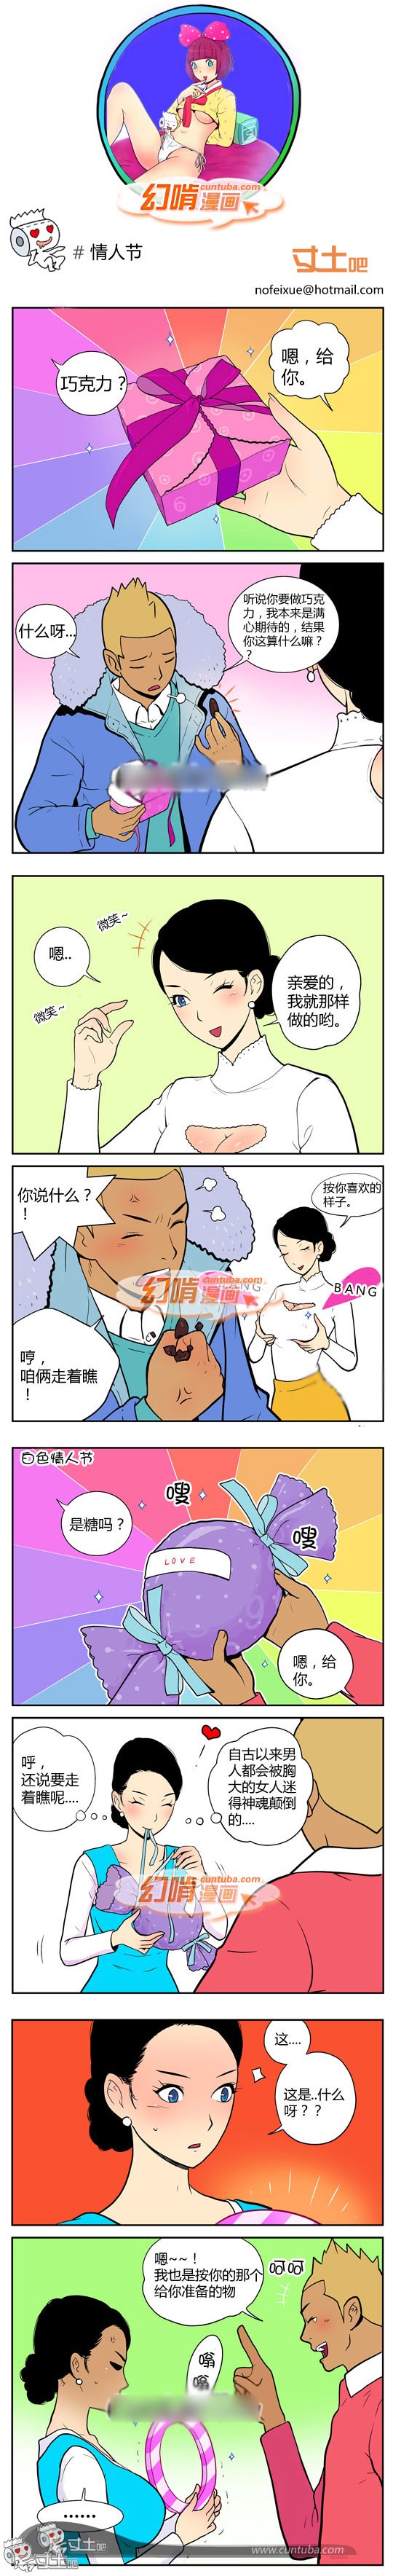 幻啃漫画情人节